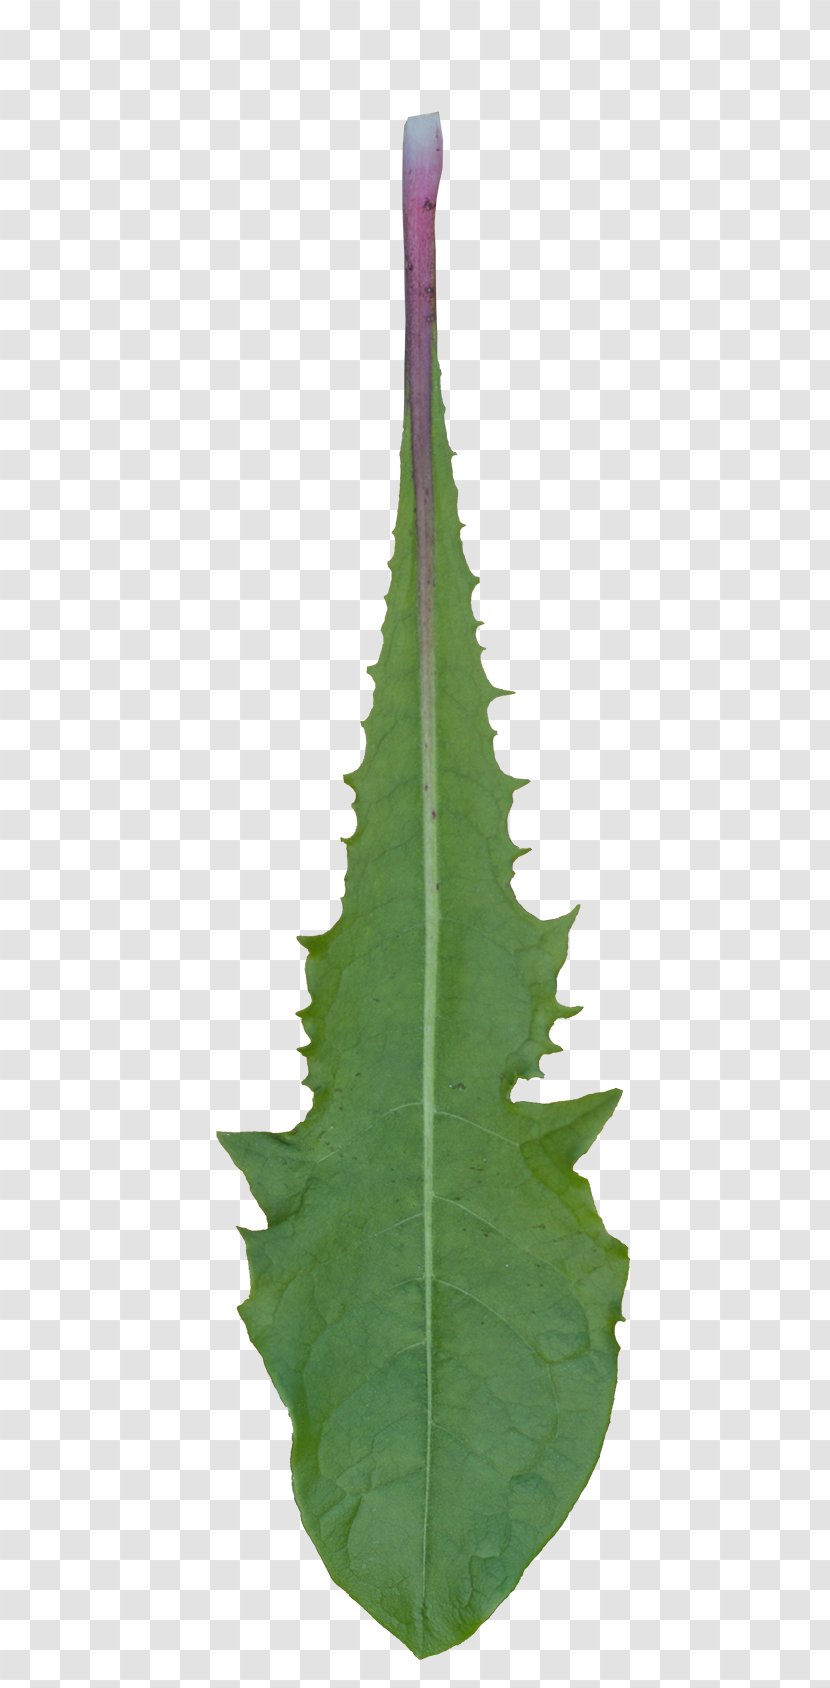 Leaf Plant Stem Trunk - Dandelion Leaves Transparent PNG